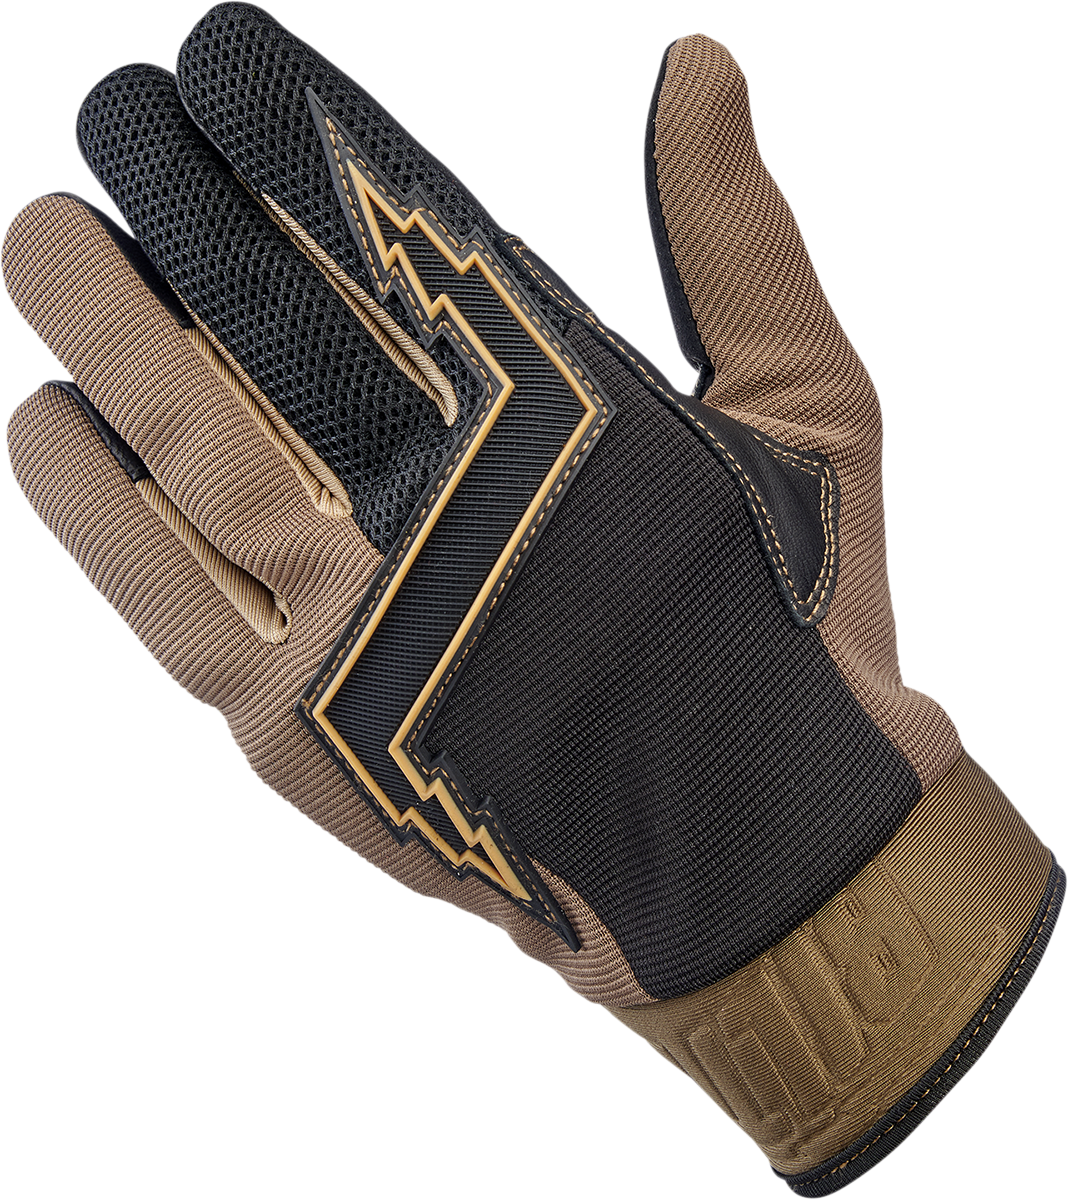 BILTWELL Baja Gloves - Chocolate - Medium 1508-0201-303